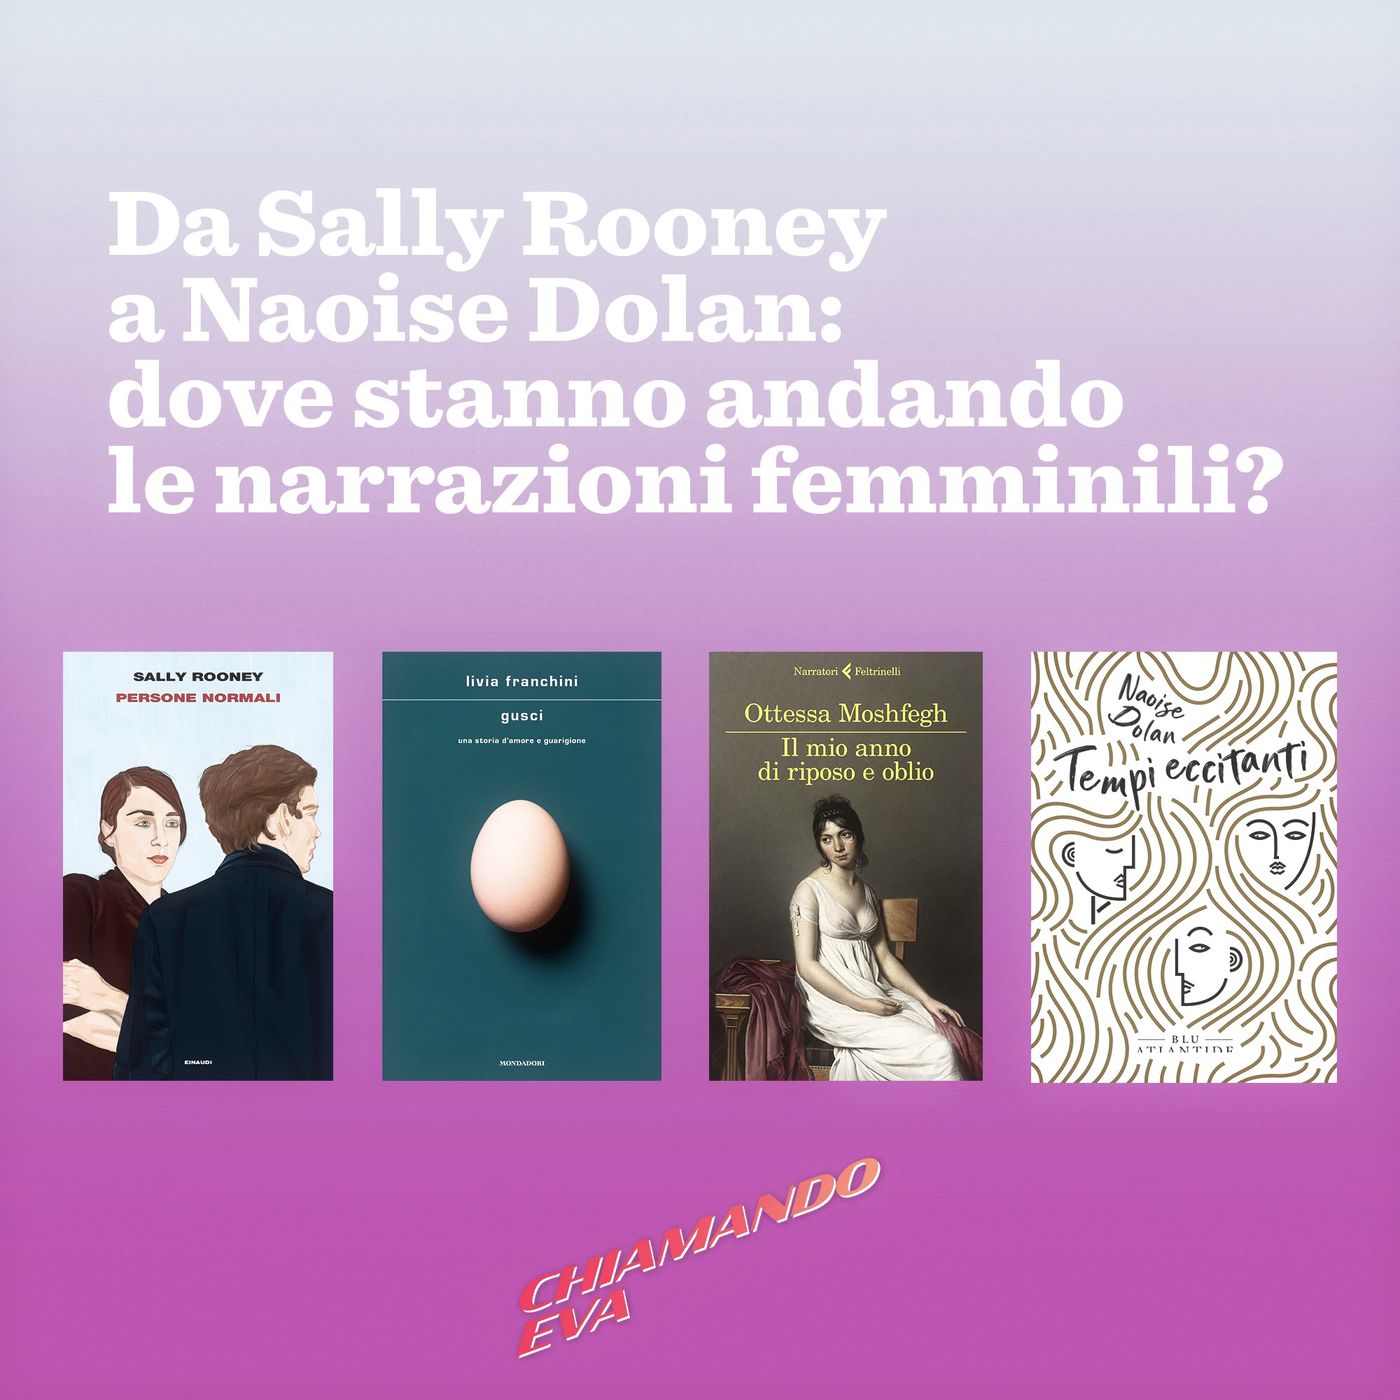 4×02: Da Sally Rooney a Naoise Dolan: dove stanno andando le narrazioni femminili?